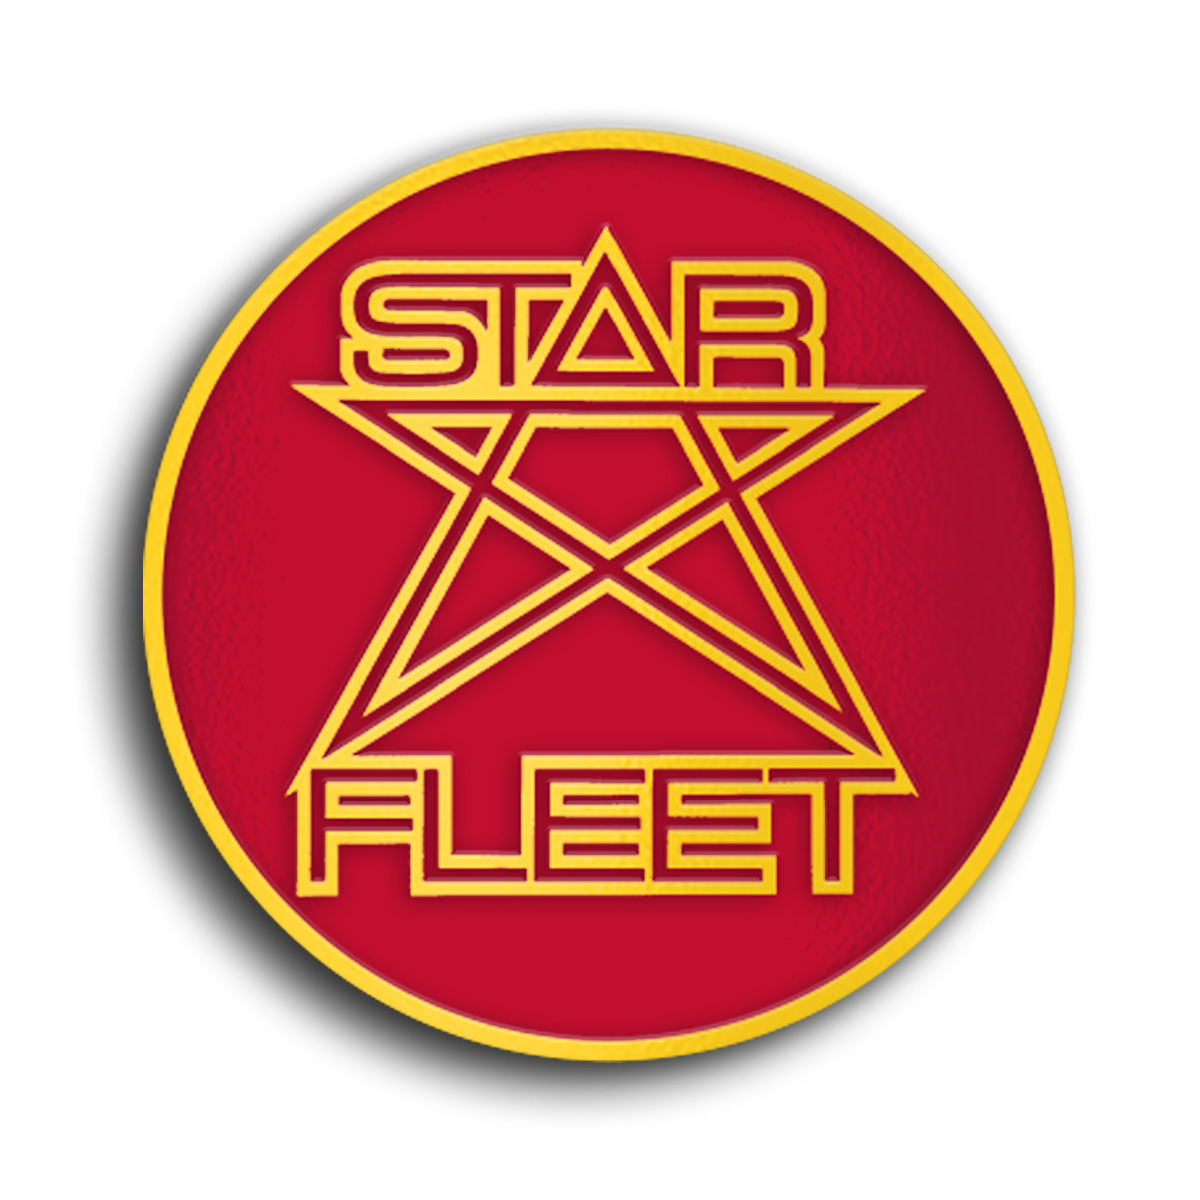 Brian May - Star Fleet Project Boxset